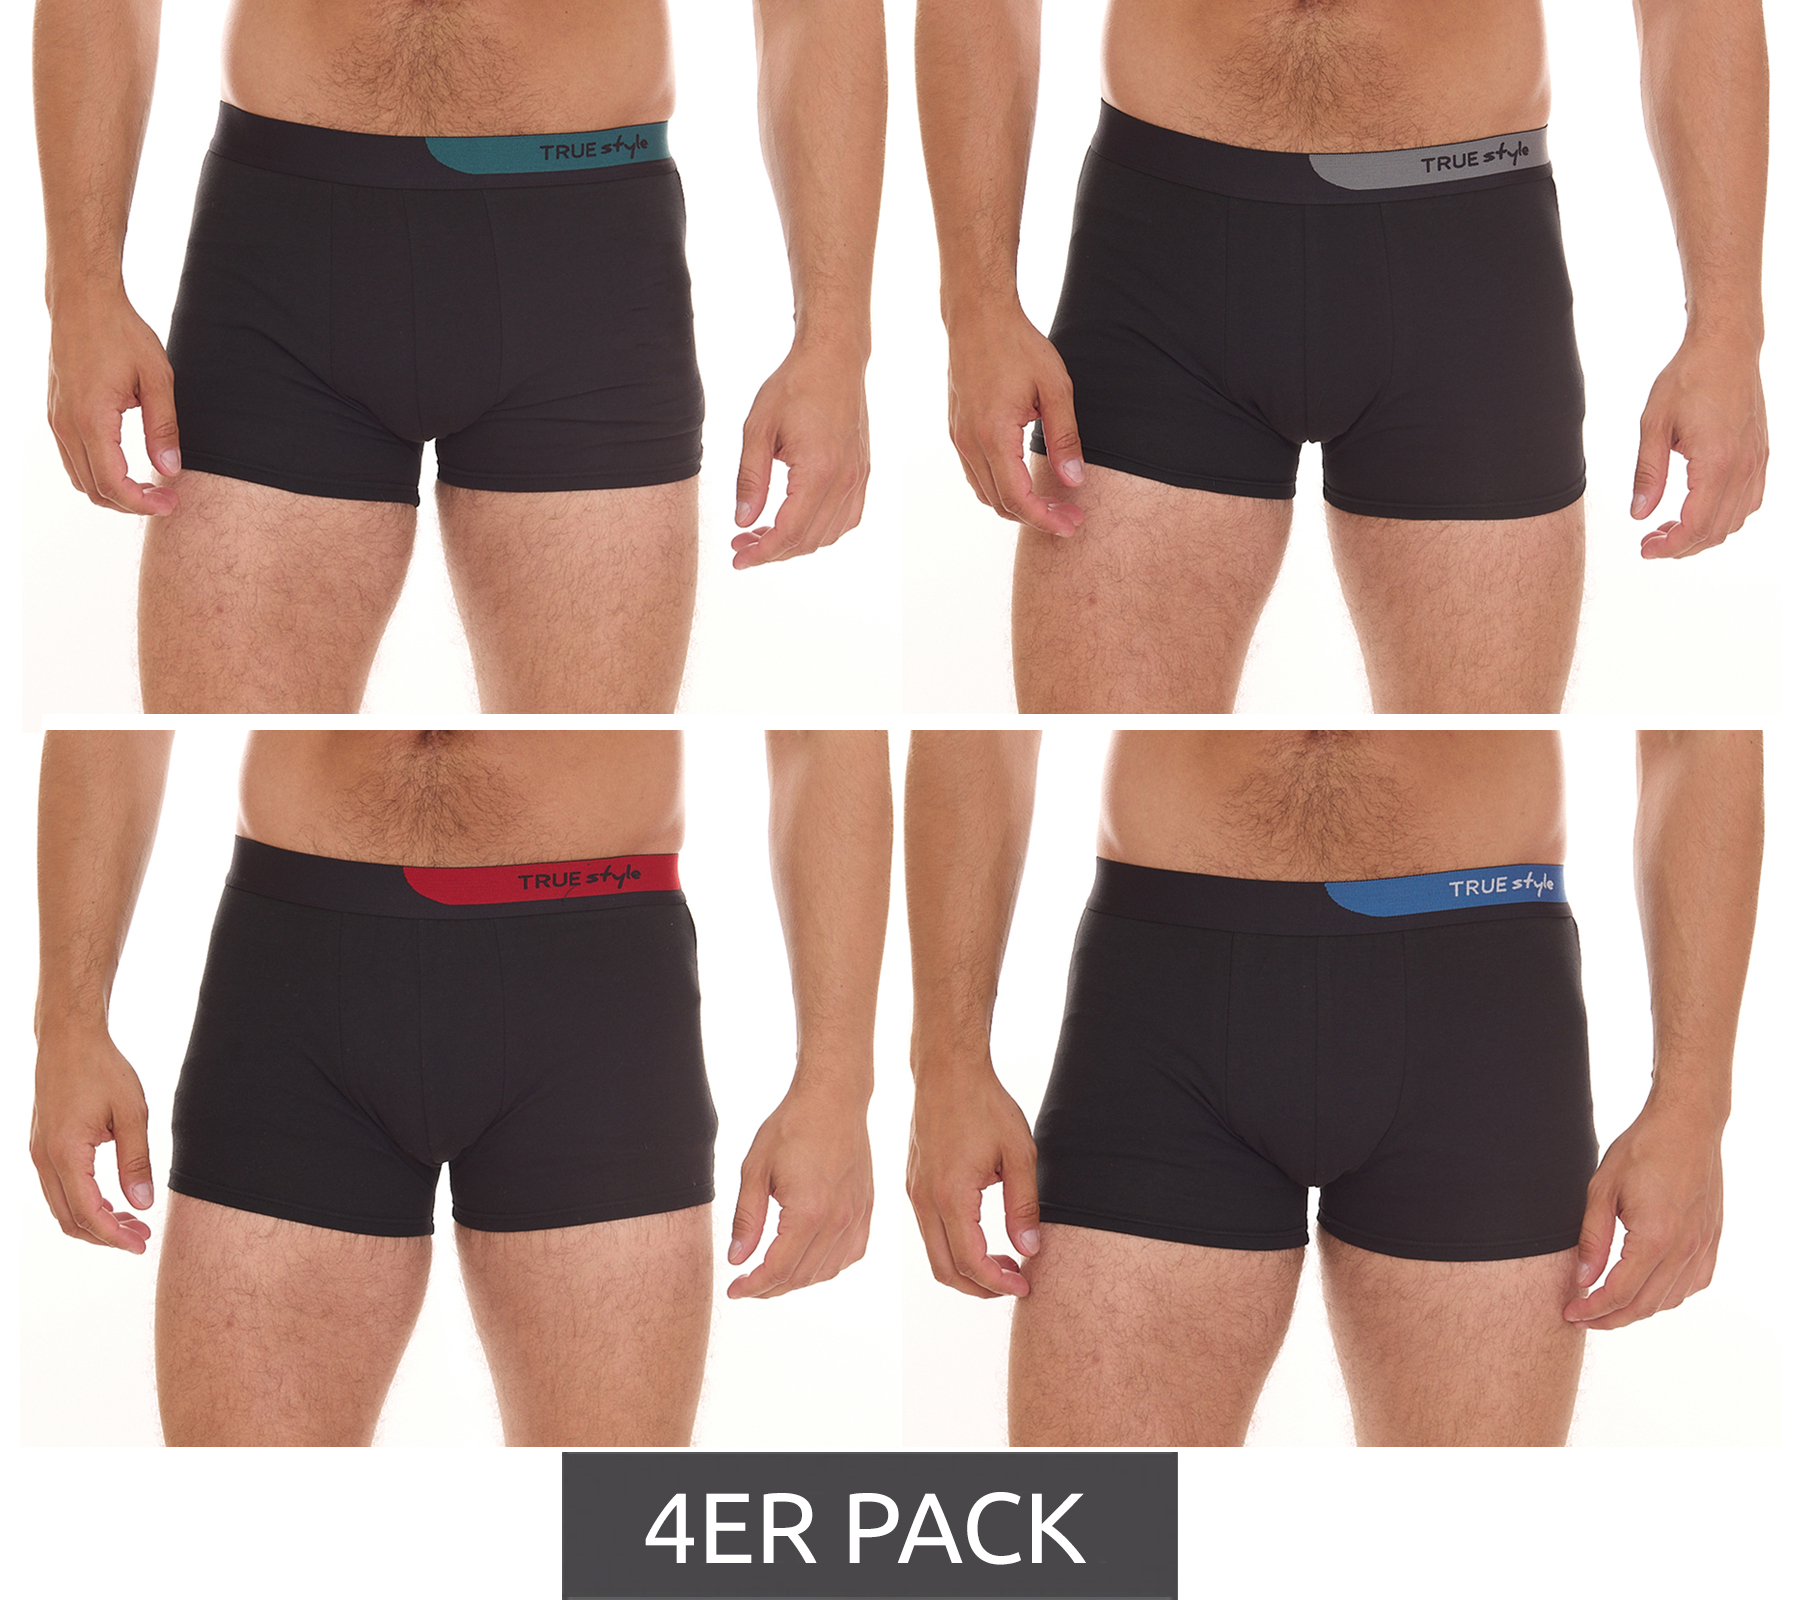 4er Pack TRUE style Herren Boxershorts nachhaltige Retro-Shorts 7708326 Schwarz/Blau/Grau/Grün von TRUE style